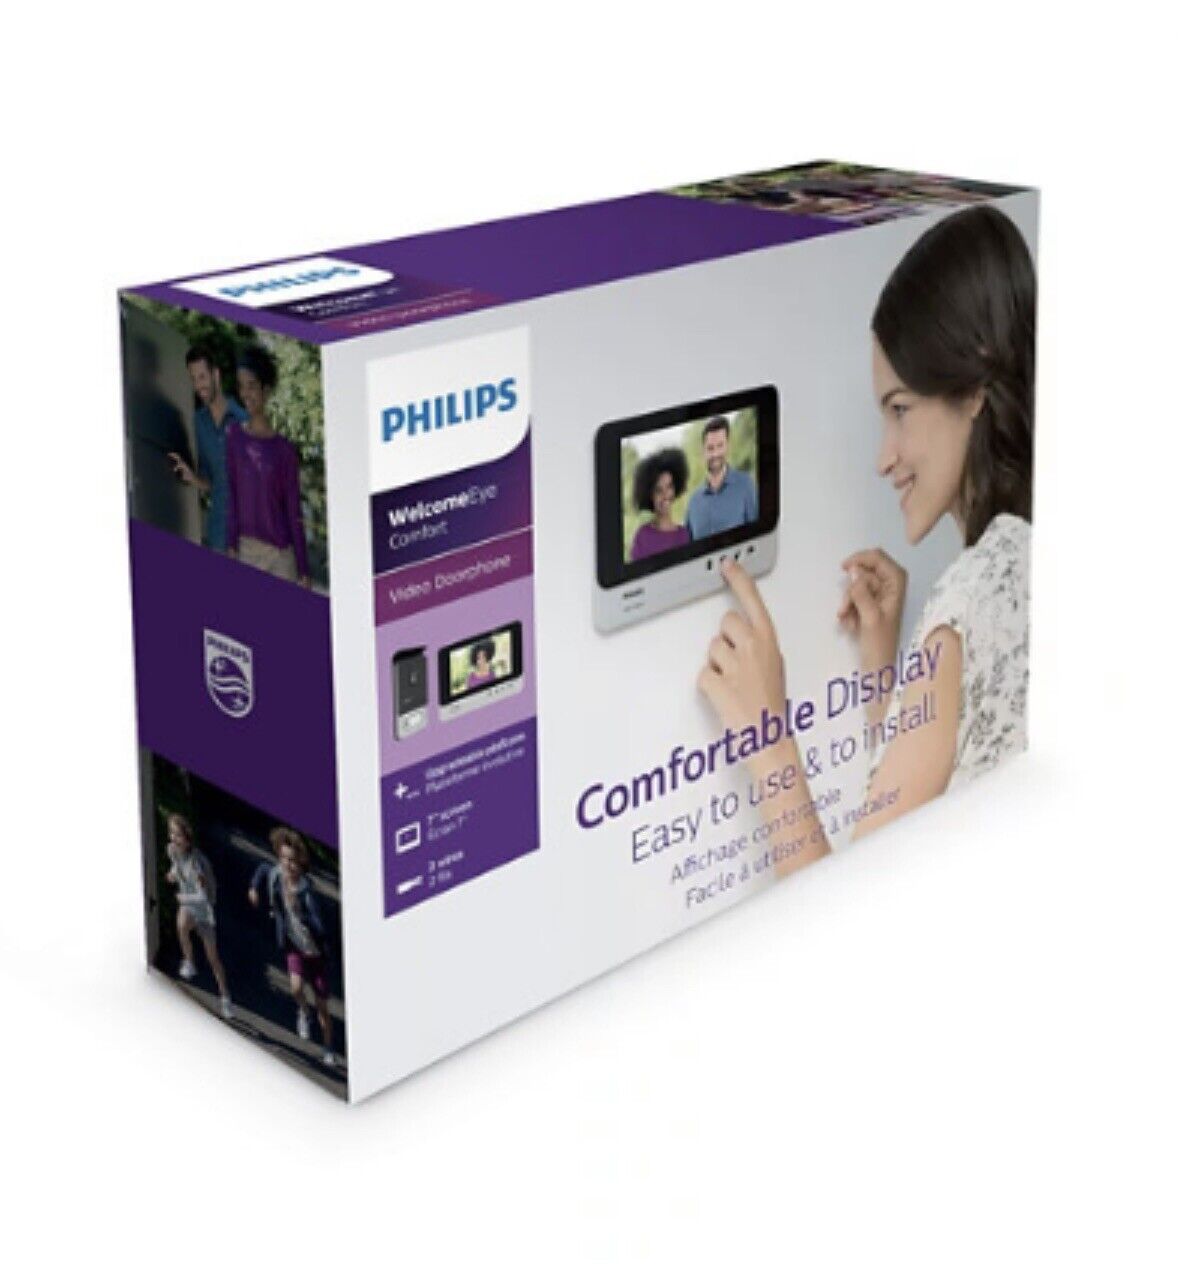 Philips WelcomeEye Confort